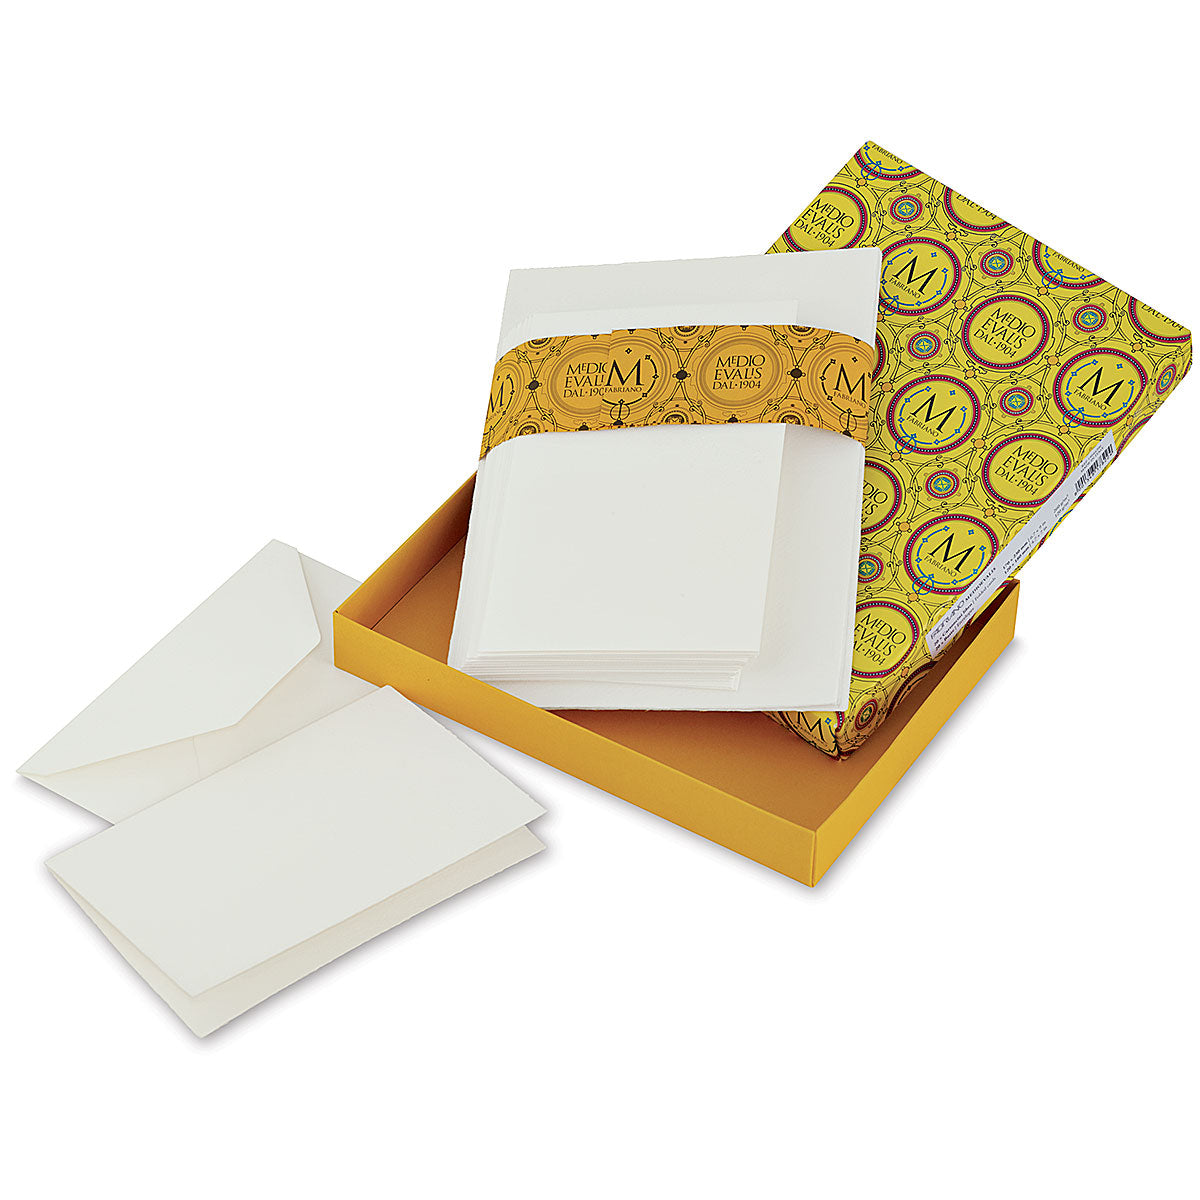 Fabriano Medioevalis Folded Card & Envelopes Set / Large